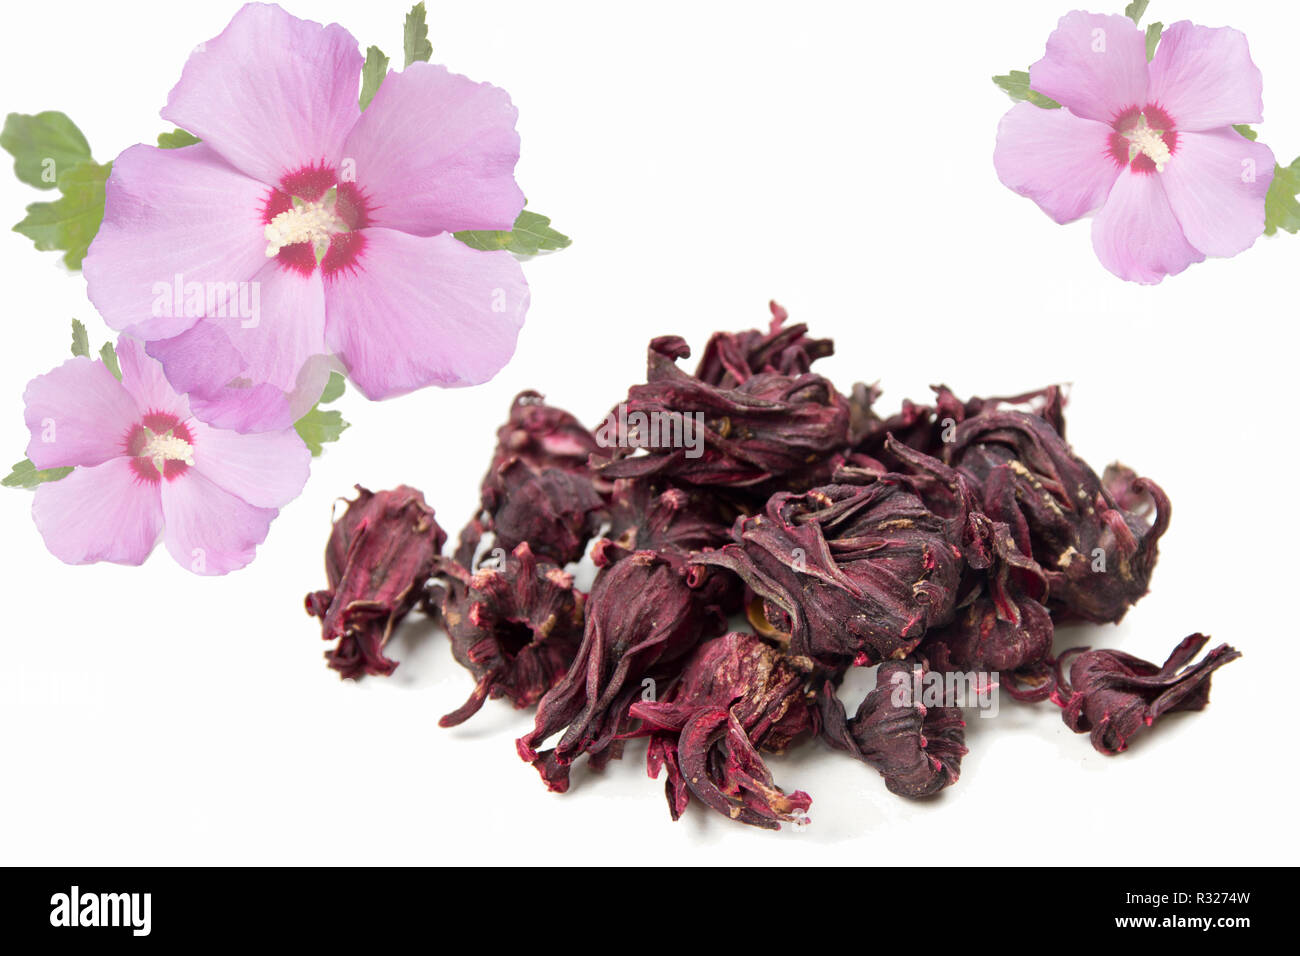 hibiscus flowers Stock Photo